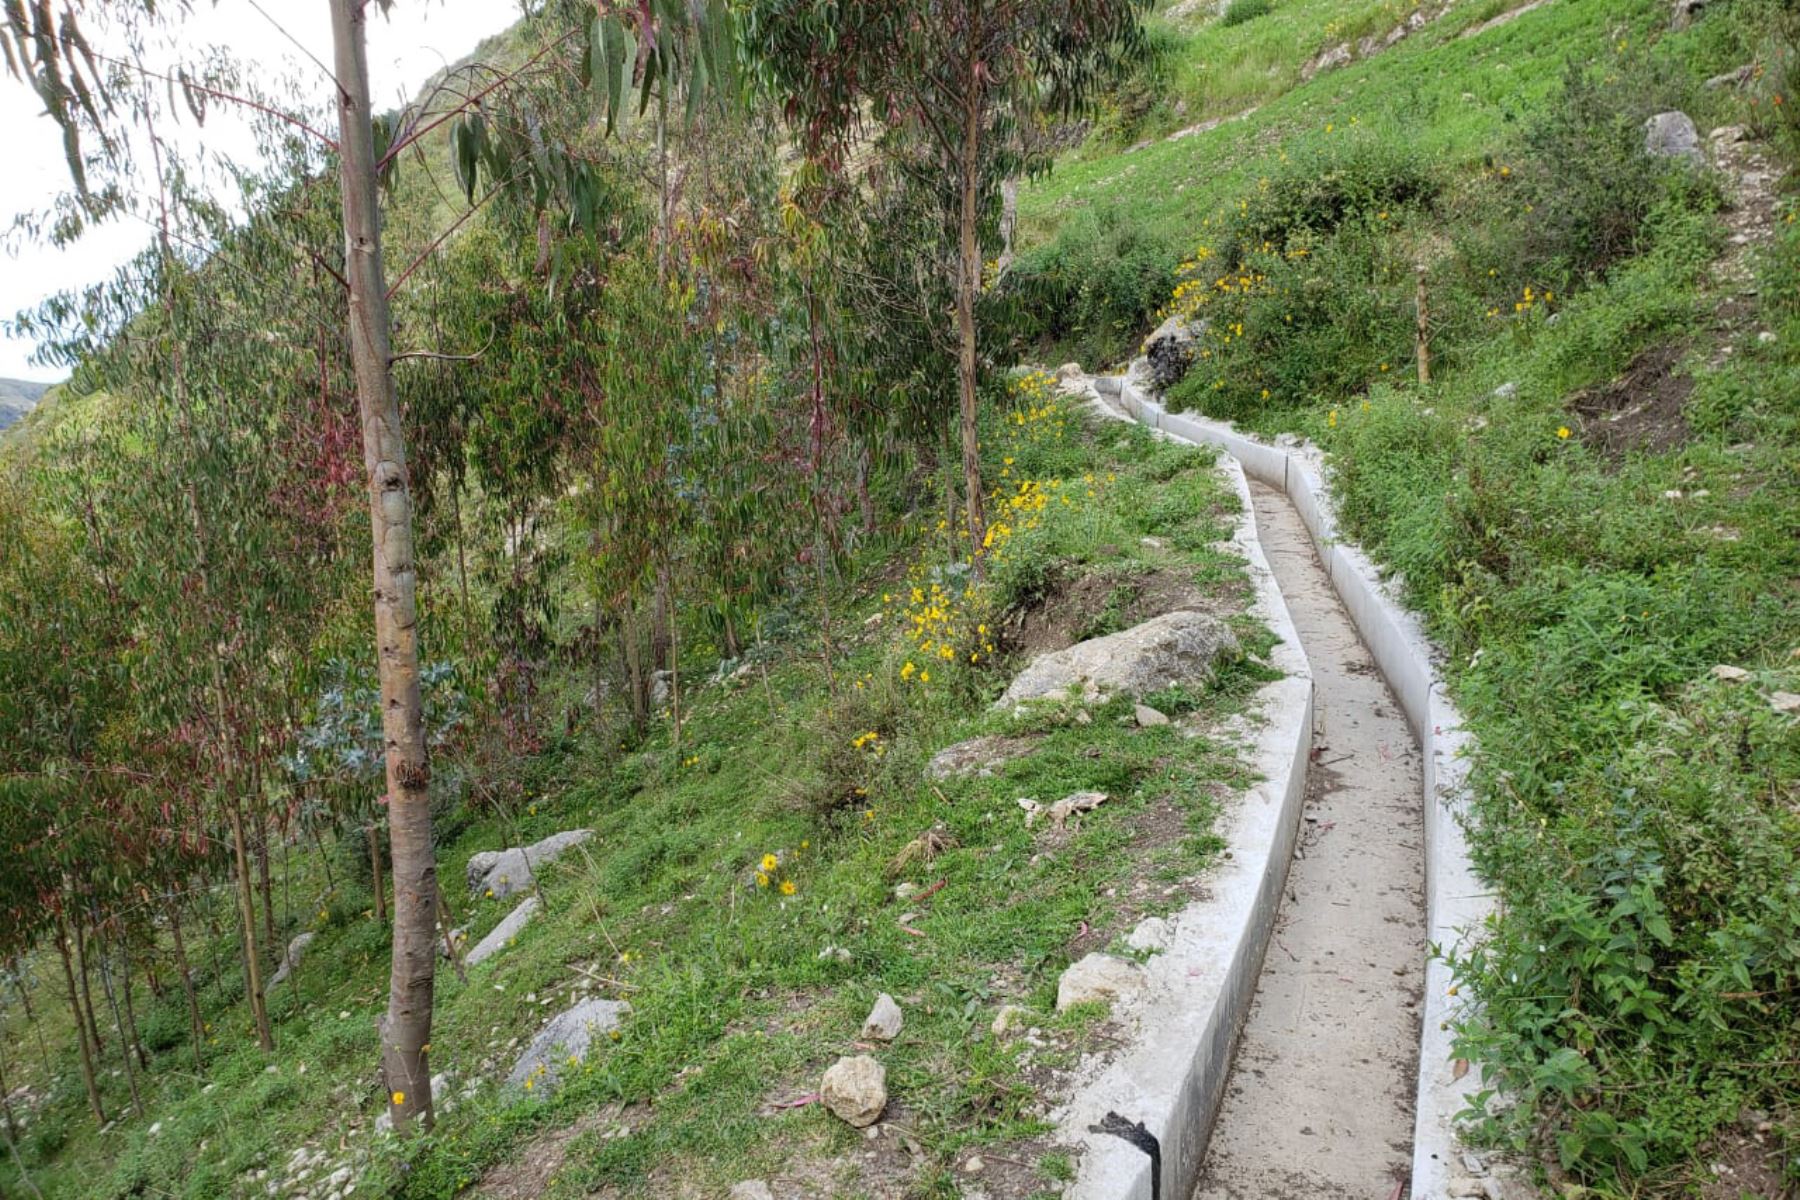 El Ministerio de Agricultura y Riego (Minagri), a través de Agro Rural, invirtió 1 millón 15,099.67 soles en el mejoramiento de la infraestructura de riego del canal Alto Redondo ubicado en el distrito de Cachachi, provincia de Cajabamba.